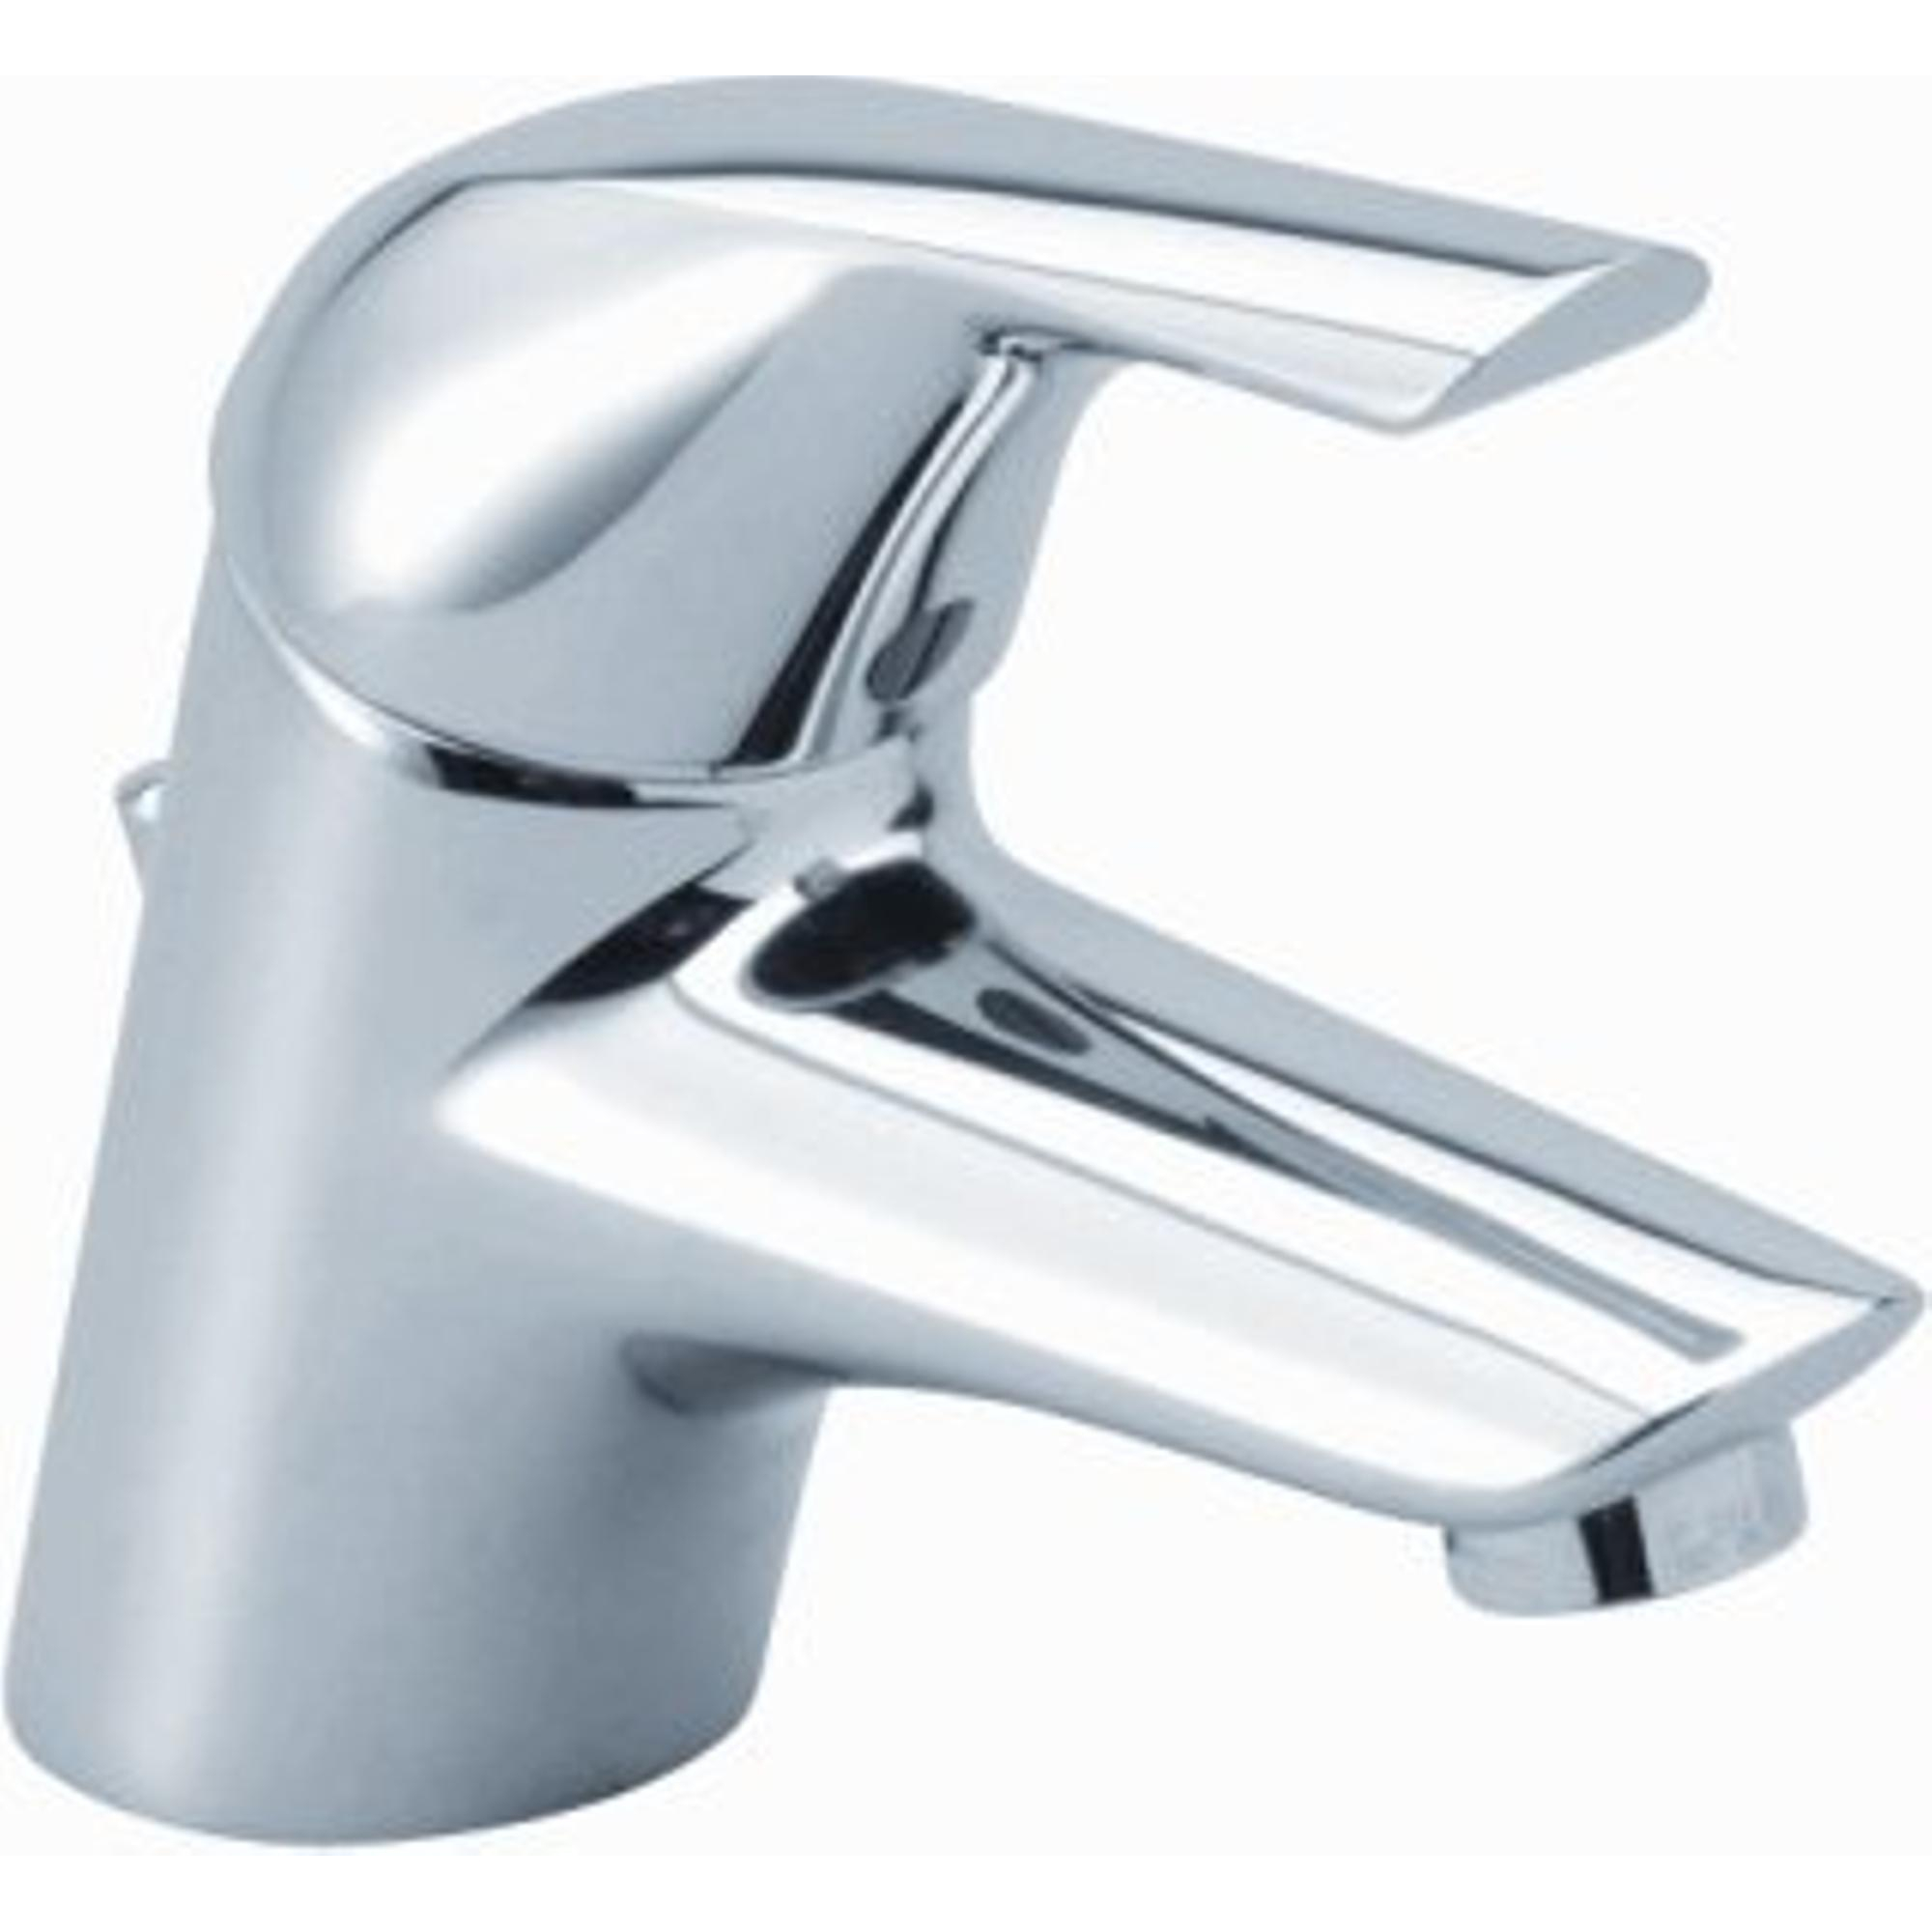 A -Prolongateur de robinet Flexible pour économie d'eau, 1 pièce